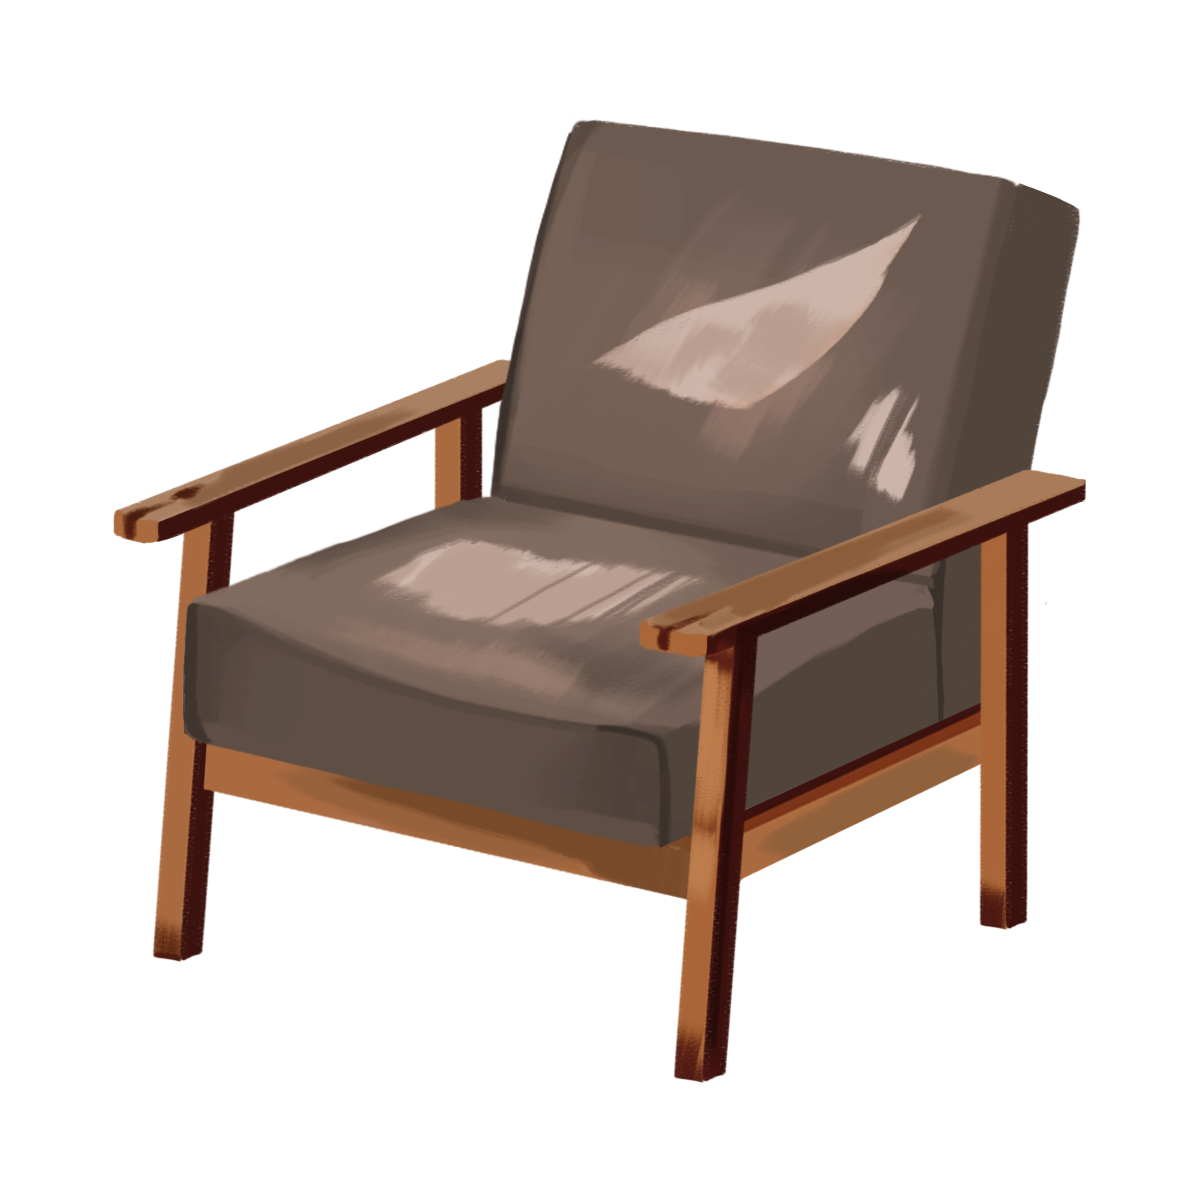 壊れた焦げ茶色の一人掛けのソファのイラスト エコのモト